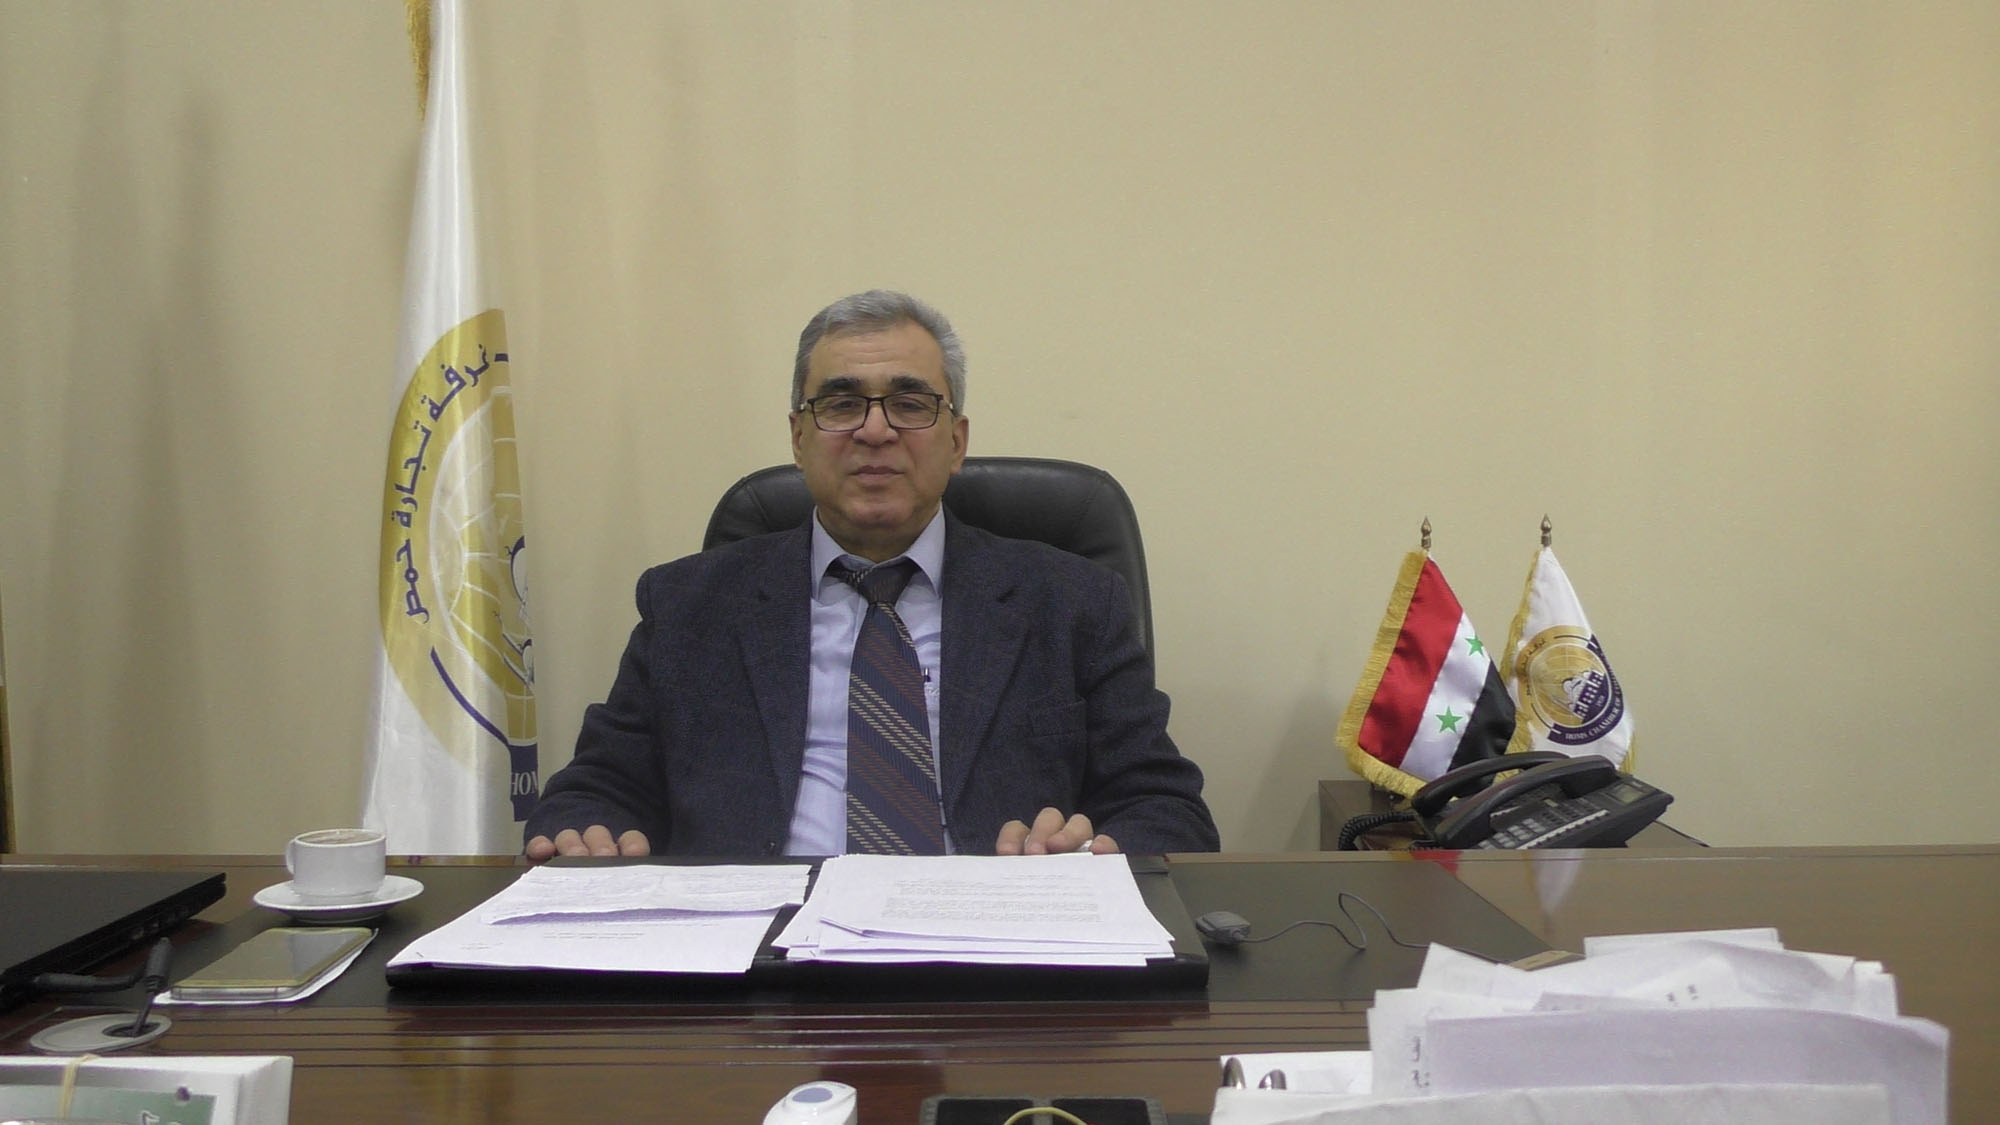 د. عبد الناصر شيخ فتوح رئيس غرفة التجارة بحمص  يتحدث  لـ "المشهد" عن واقع المدينة التجاري وقضايا أخرى (فيديو)